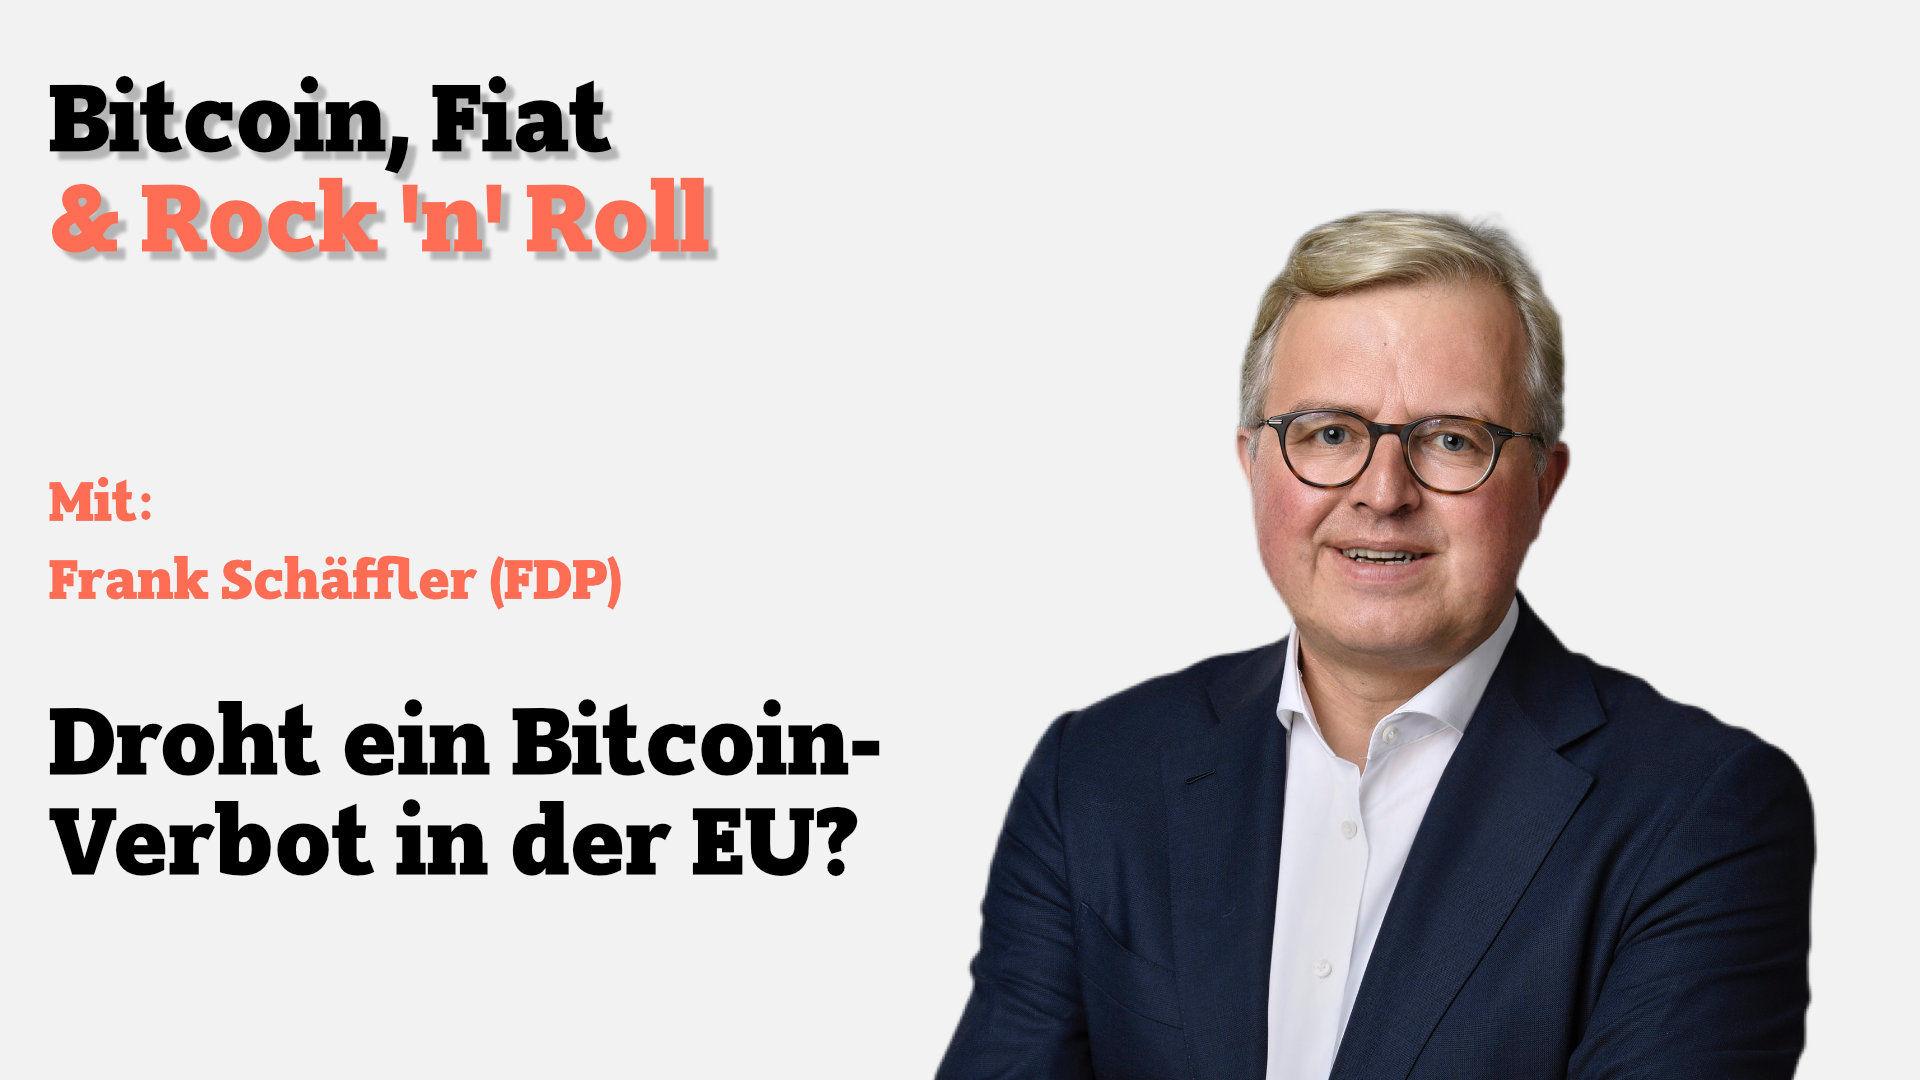 #CryptoFriday Droht ein Bitcoin-Verbot in der EU? Interview mit Frank Schäffler (FDP)